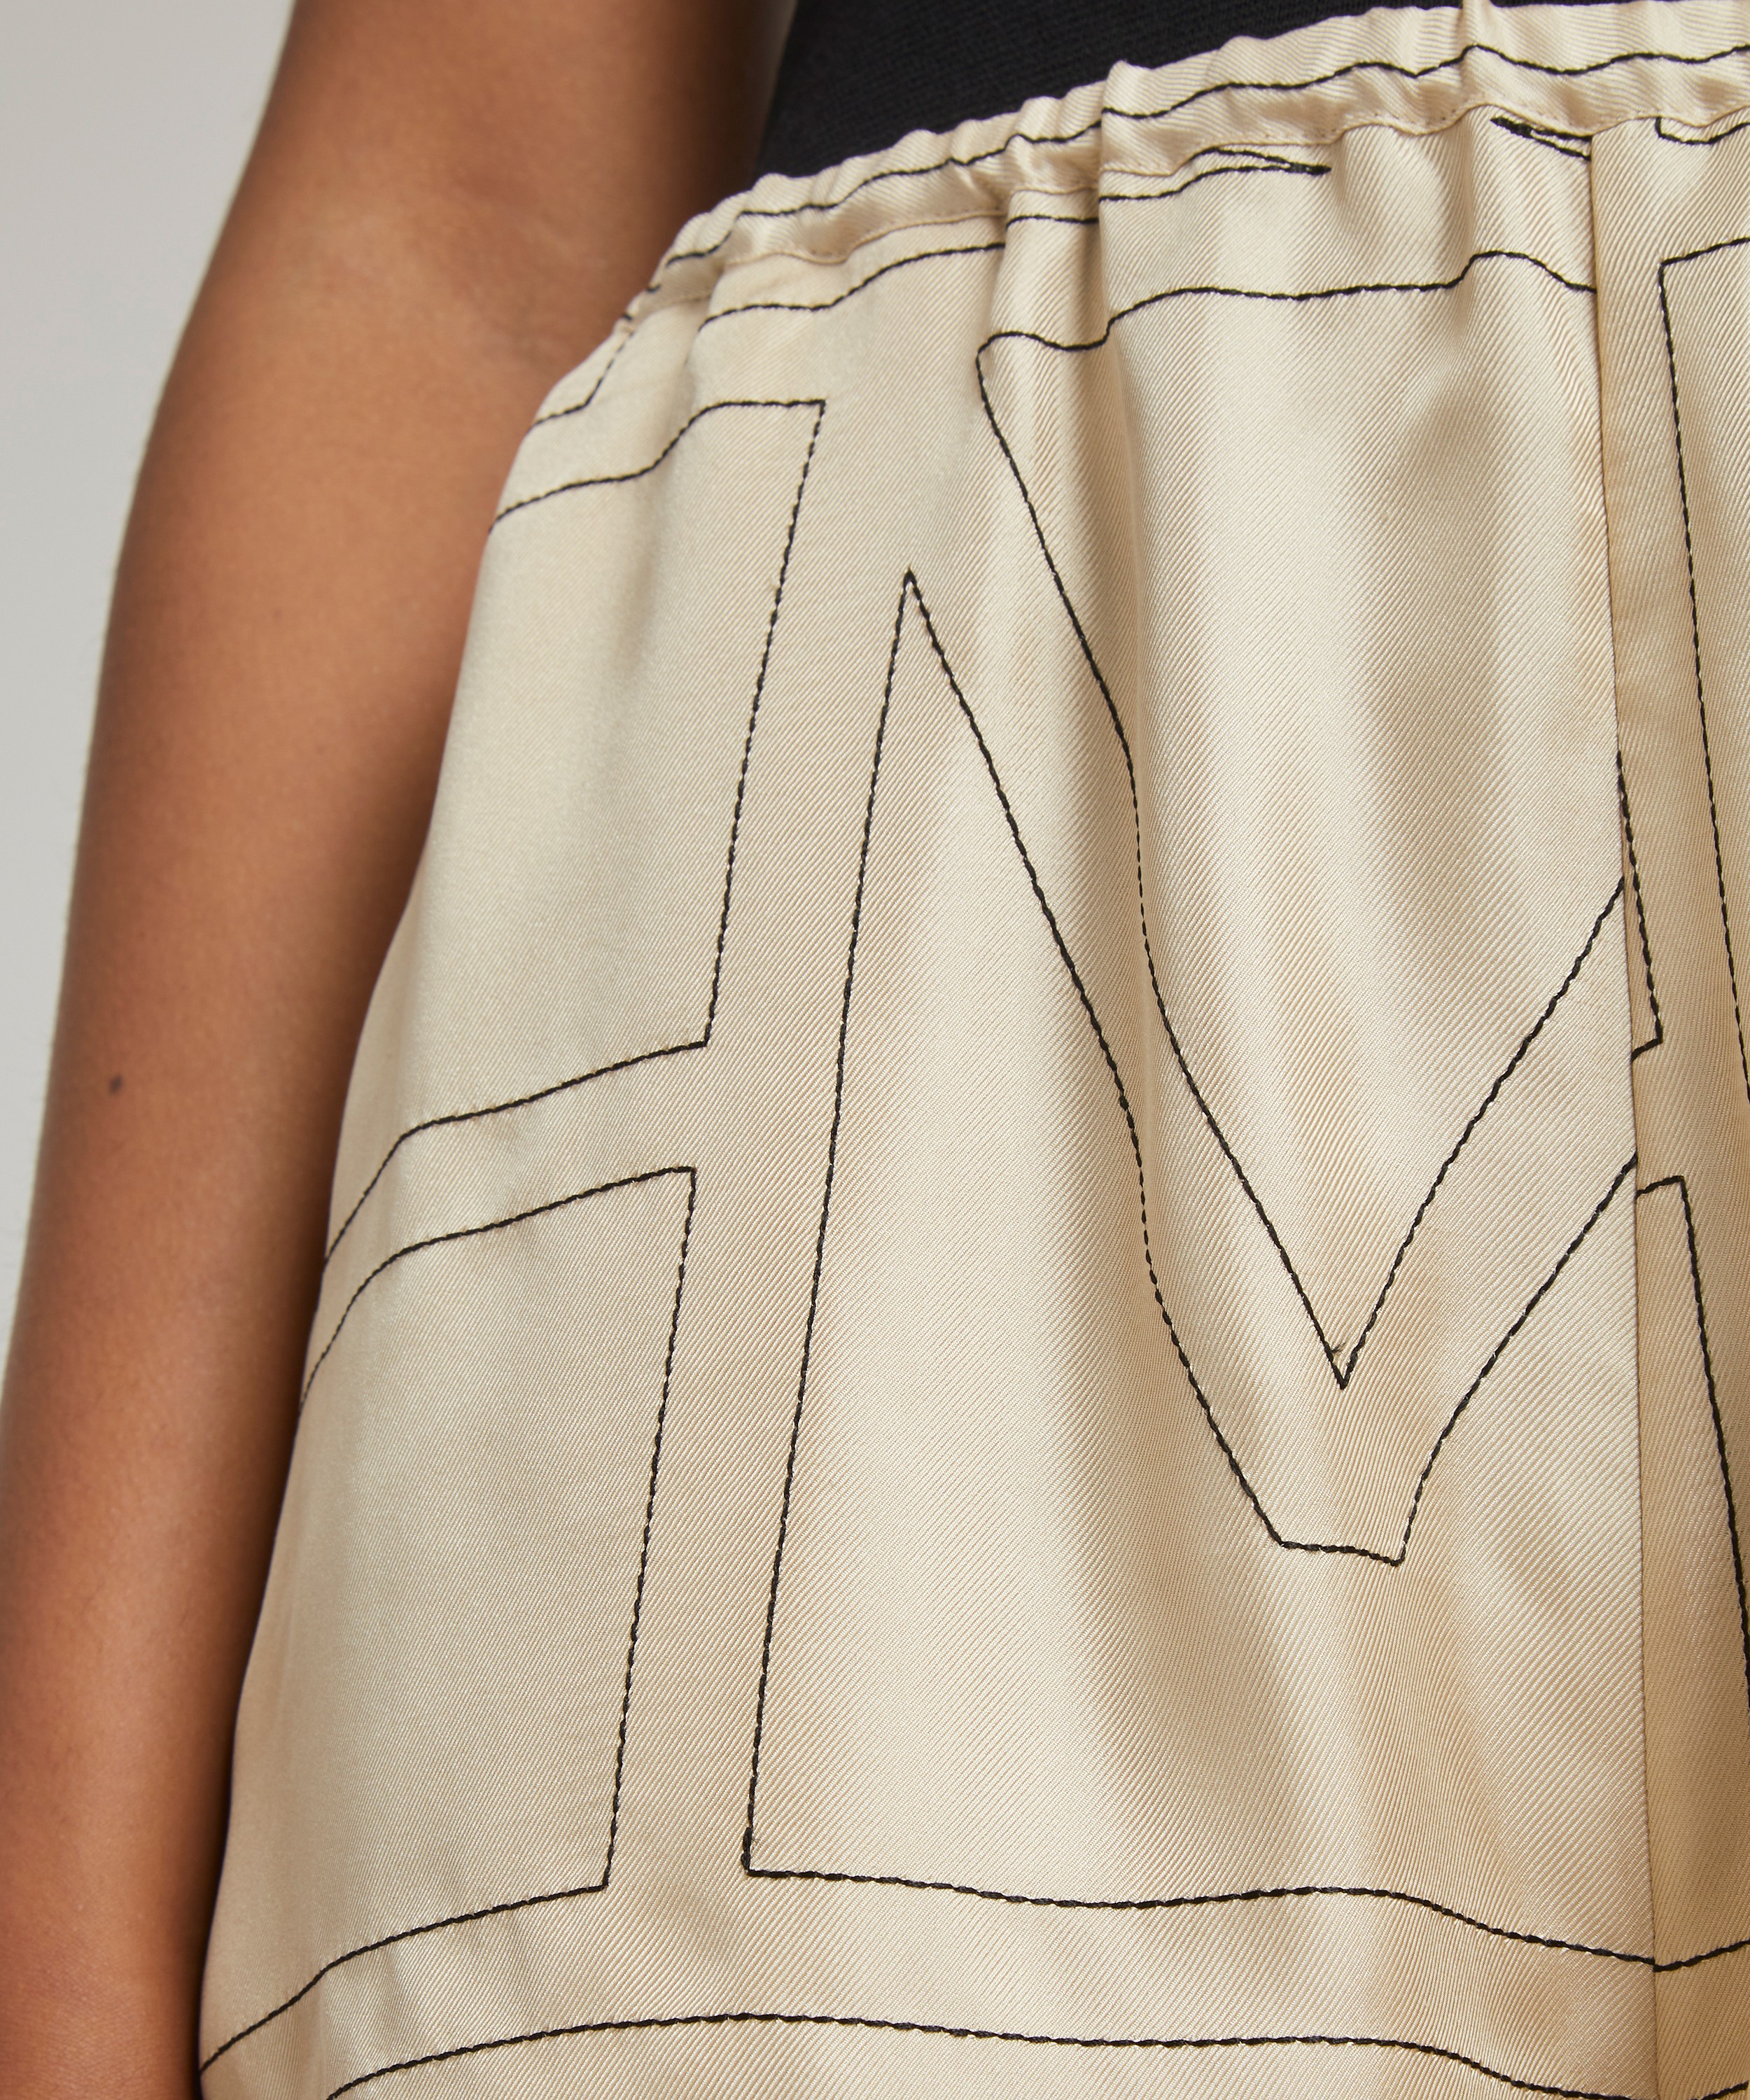 Monogram silk pajama shorts by Toteme